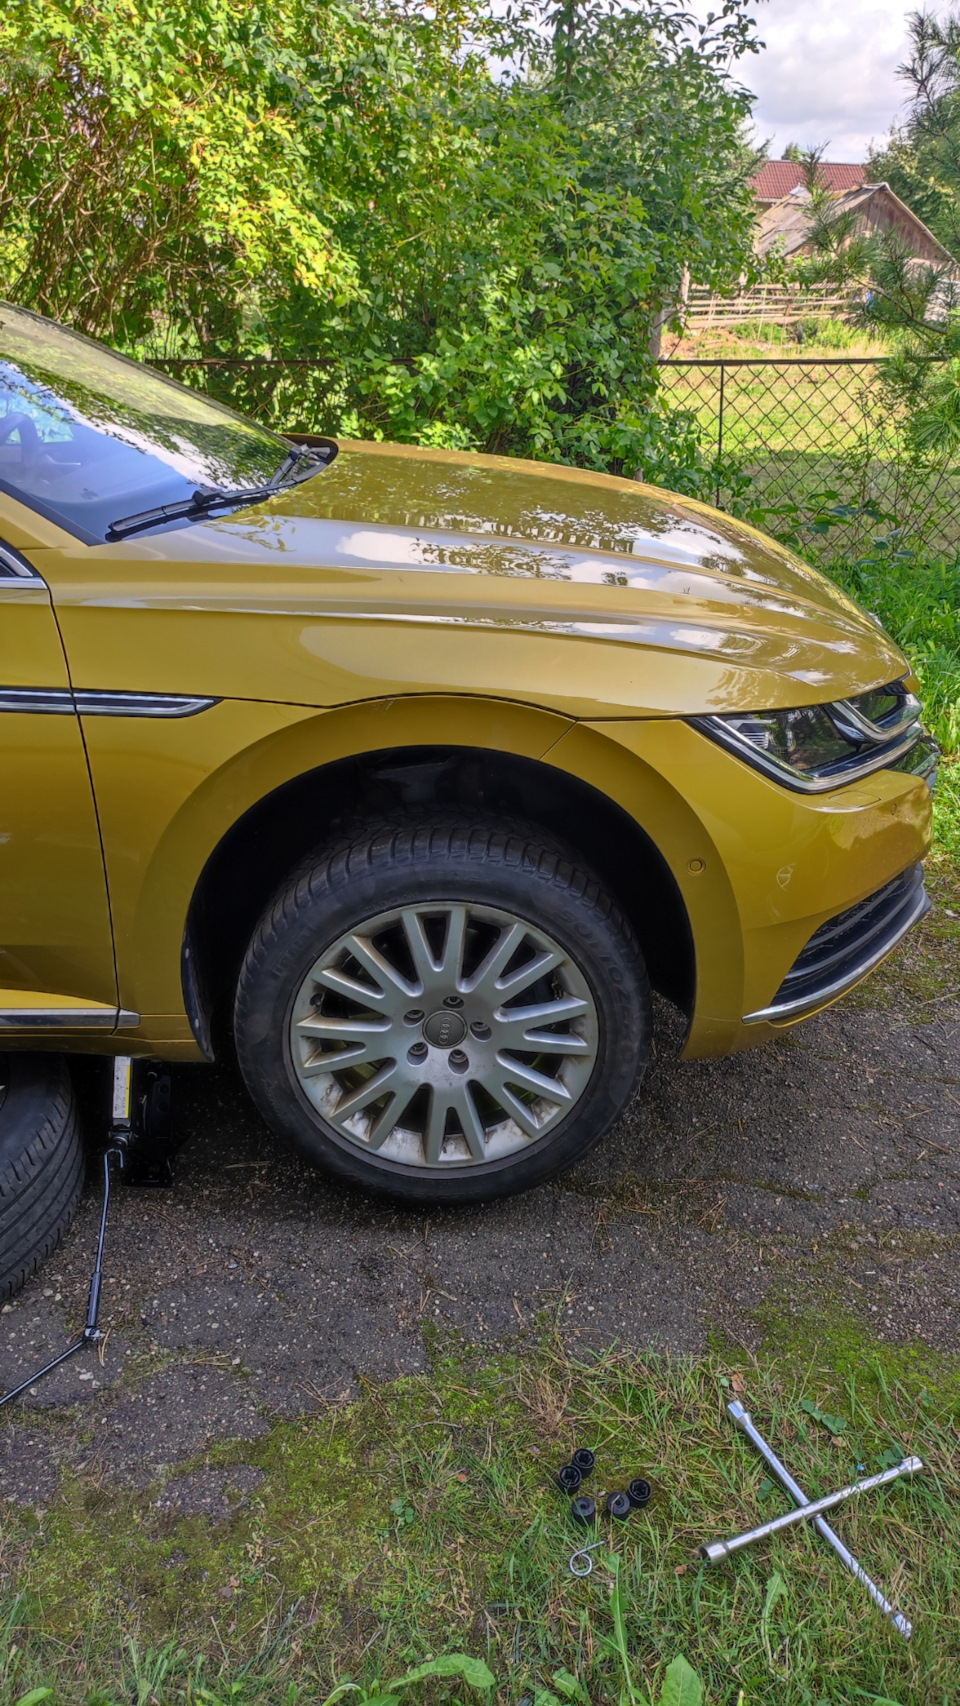 Поставил на учёт — Volkswagen Arteon, 1,5 л, 2019 года | колёсные диски ...